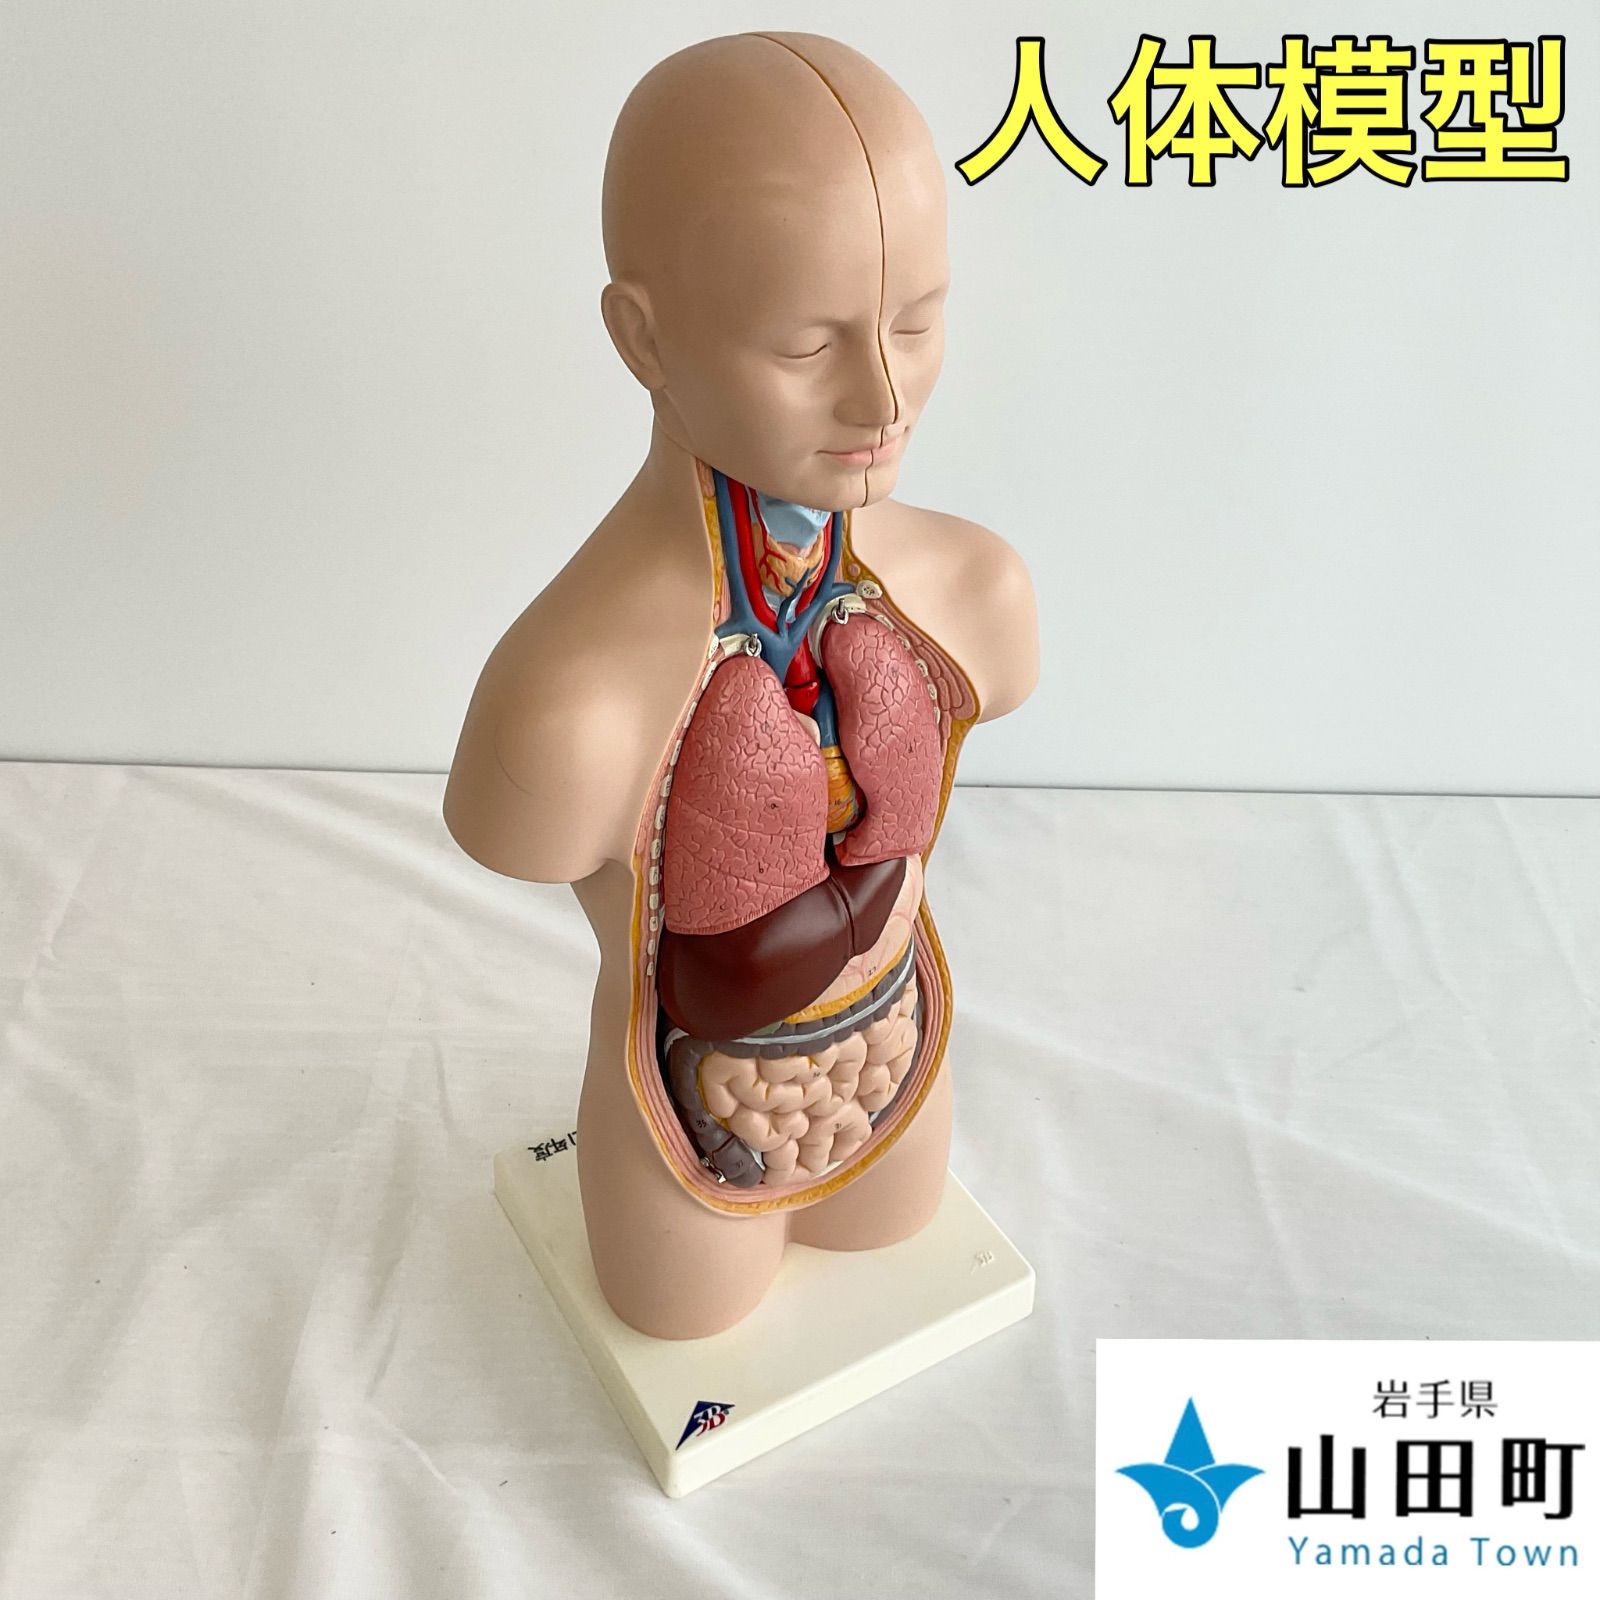 人体解剖模型（トルソー型） ３Bサイエンティフィック 【ymk-009